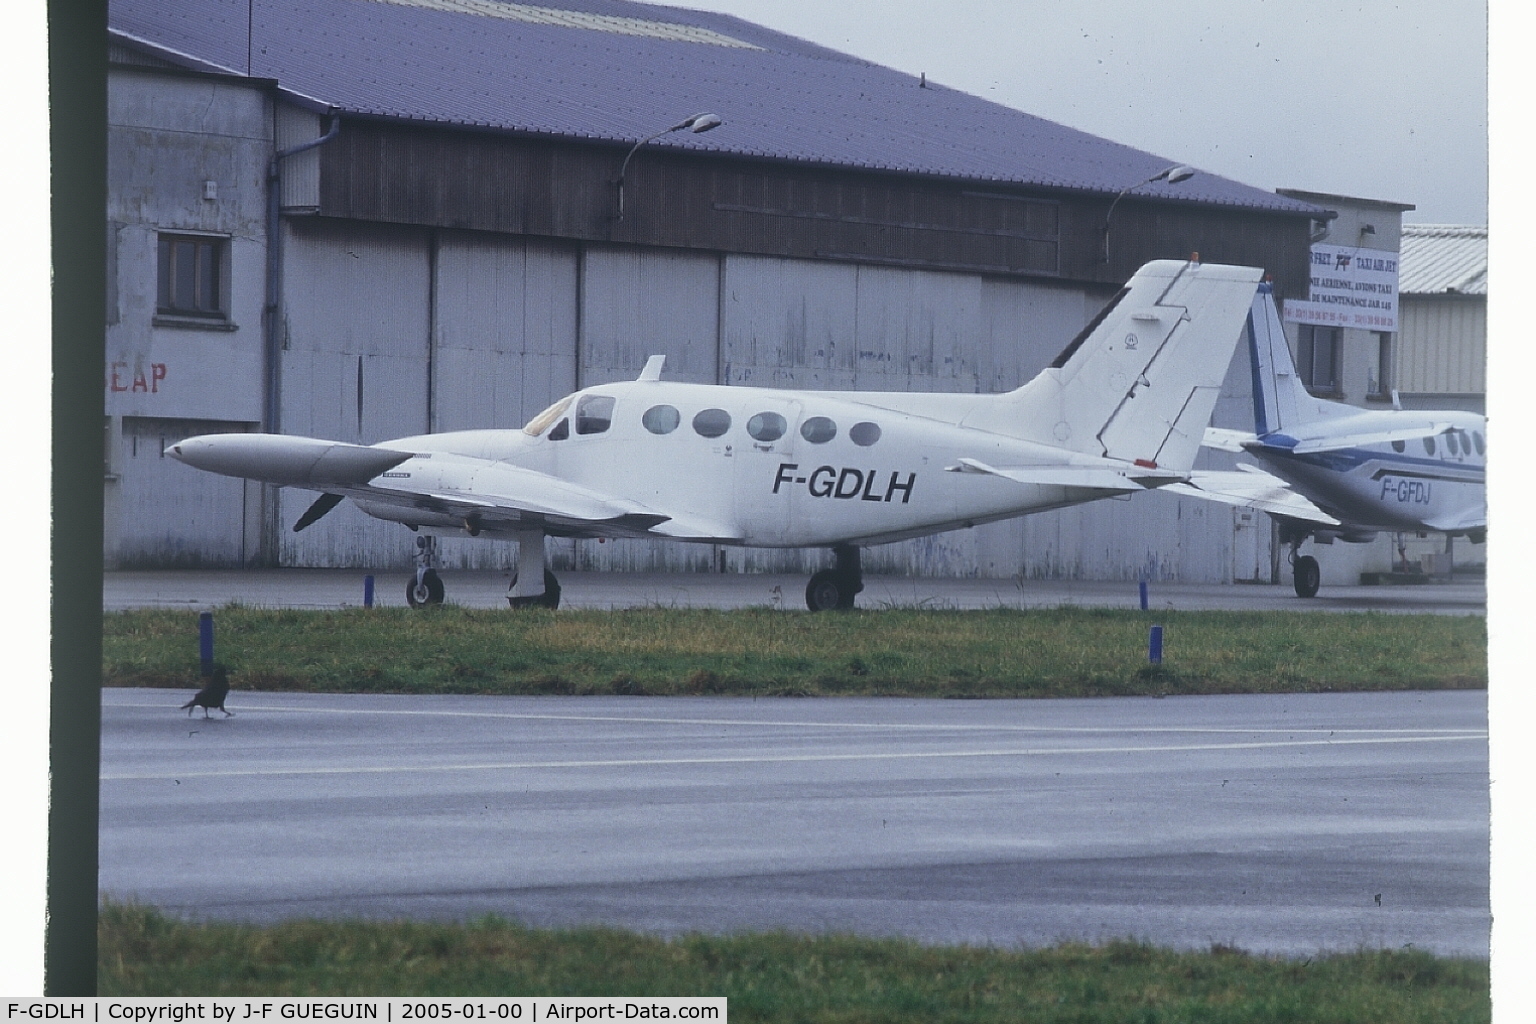 F-GDLH, 1972 Cessna 421B Golden Eagle C/N 421B0320, Parked at Paris/Toussus-le-Noble airport.